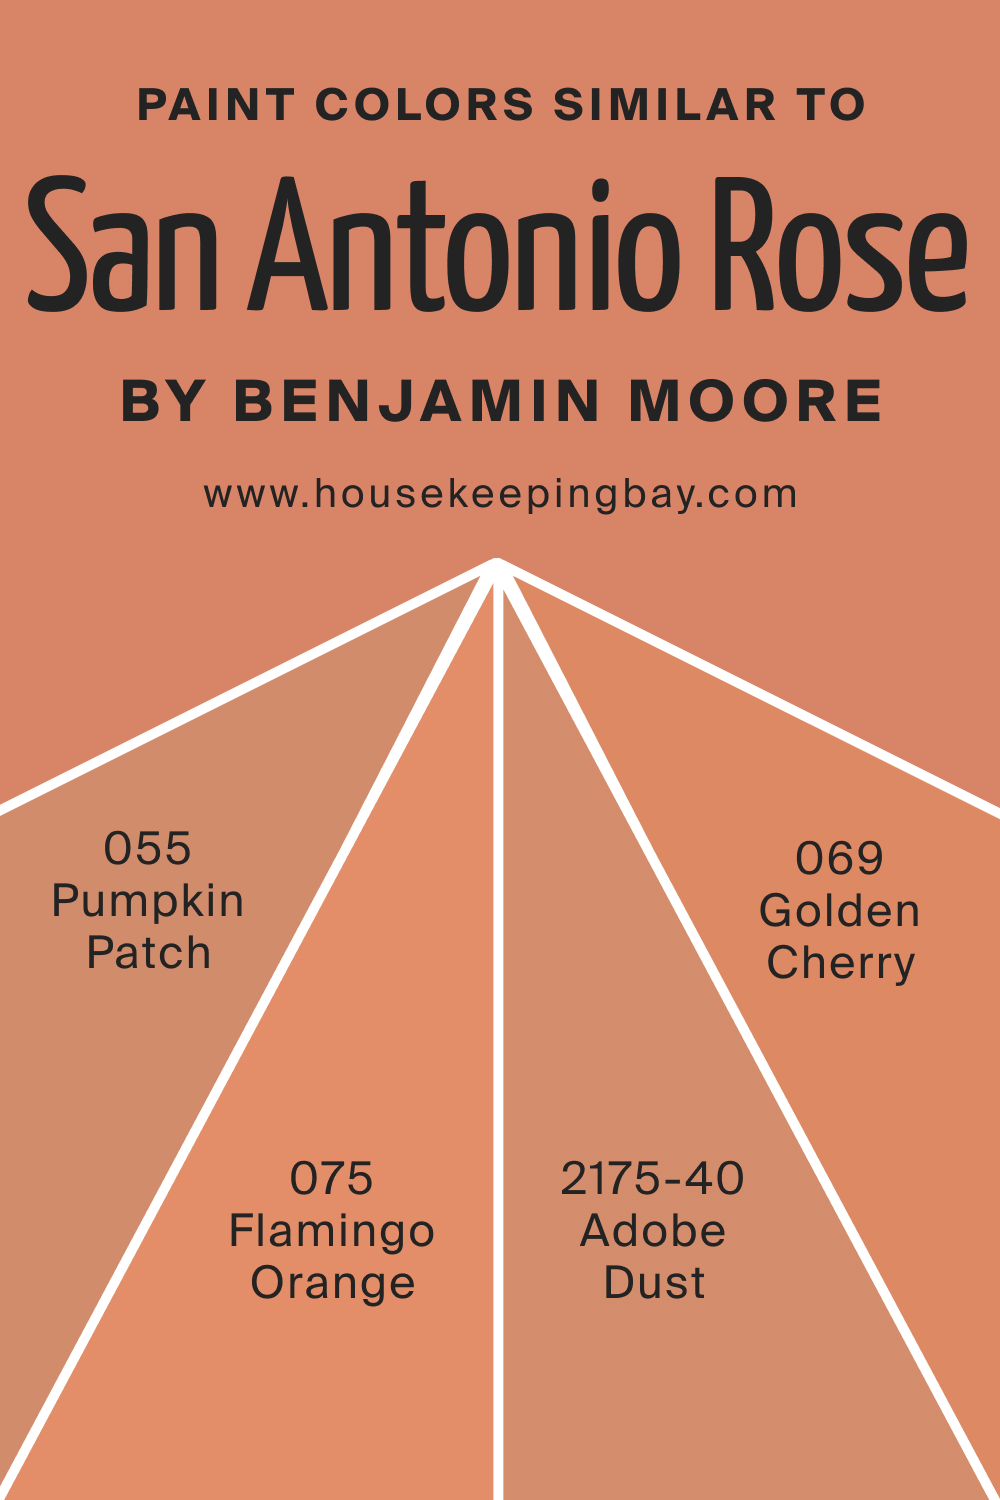 Paint Colors Similar to San Antonio Rose 027 by Benjamin Moore